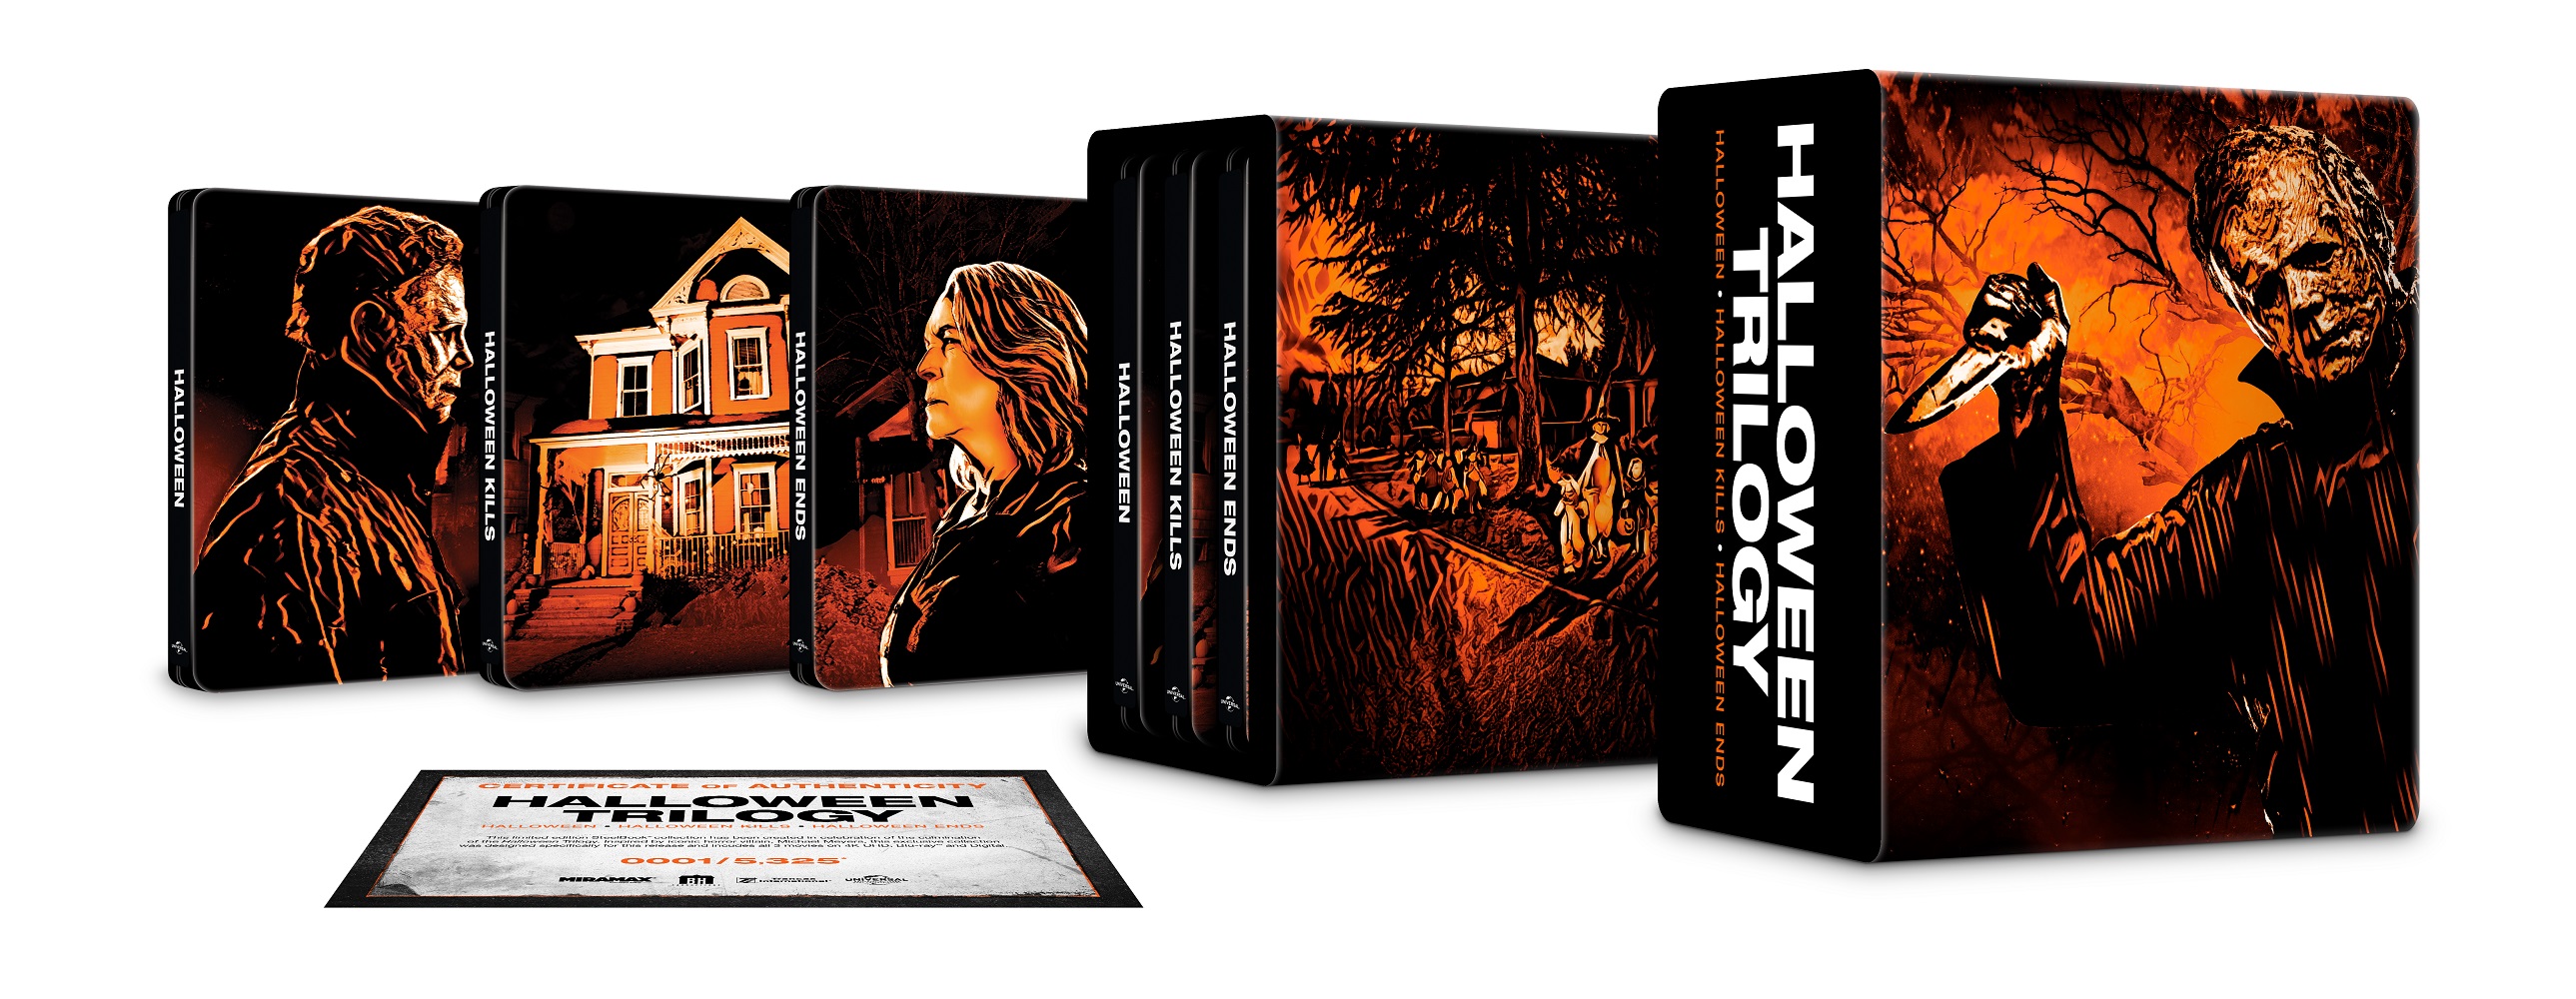 Halloween Trilogy [Includes Digital Copy] [SteelBook] [4k Ultra HD Blu-ray/Blu-ray] [Only @ Best Buy]